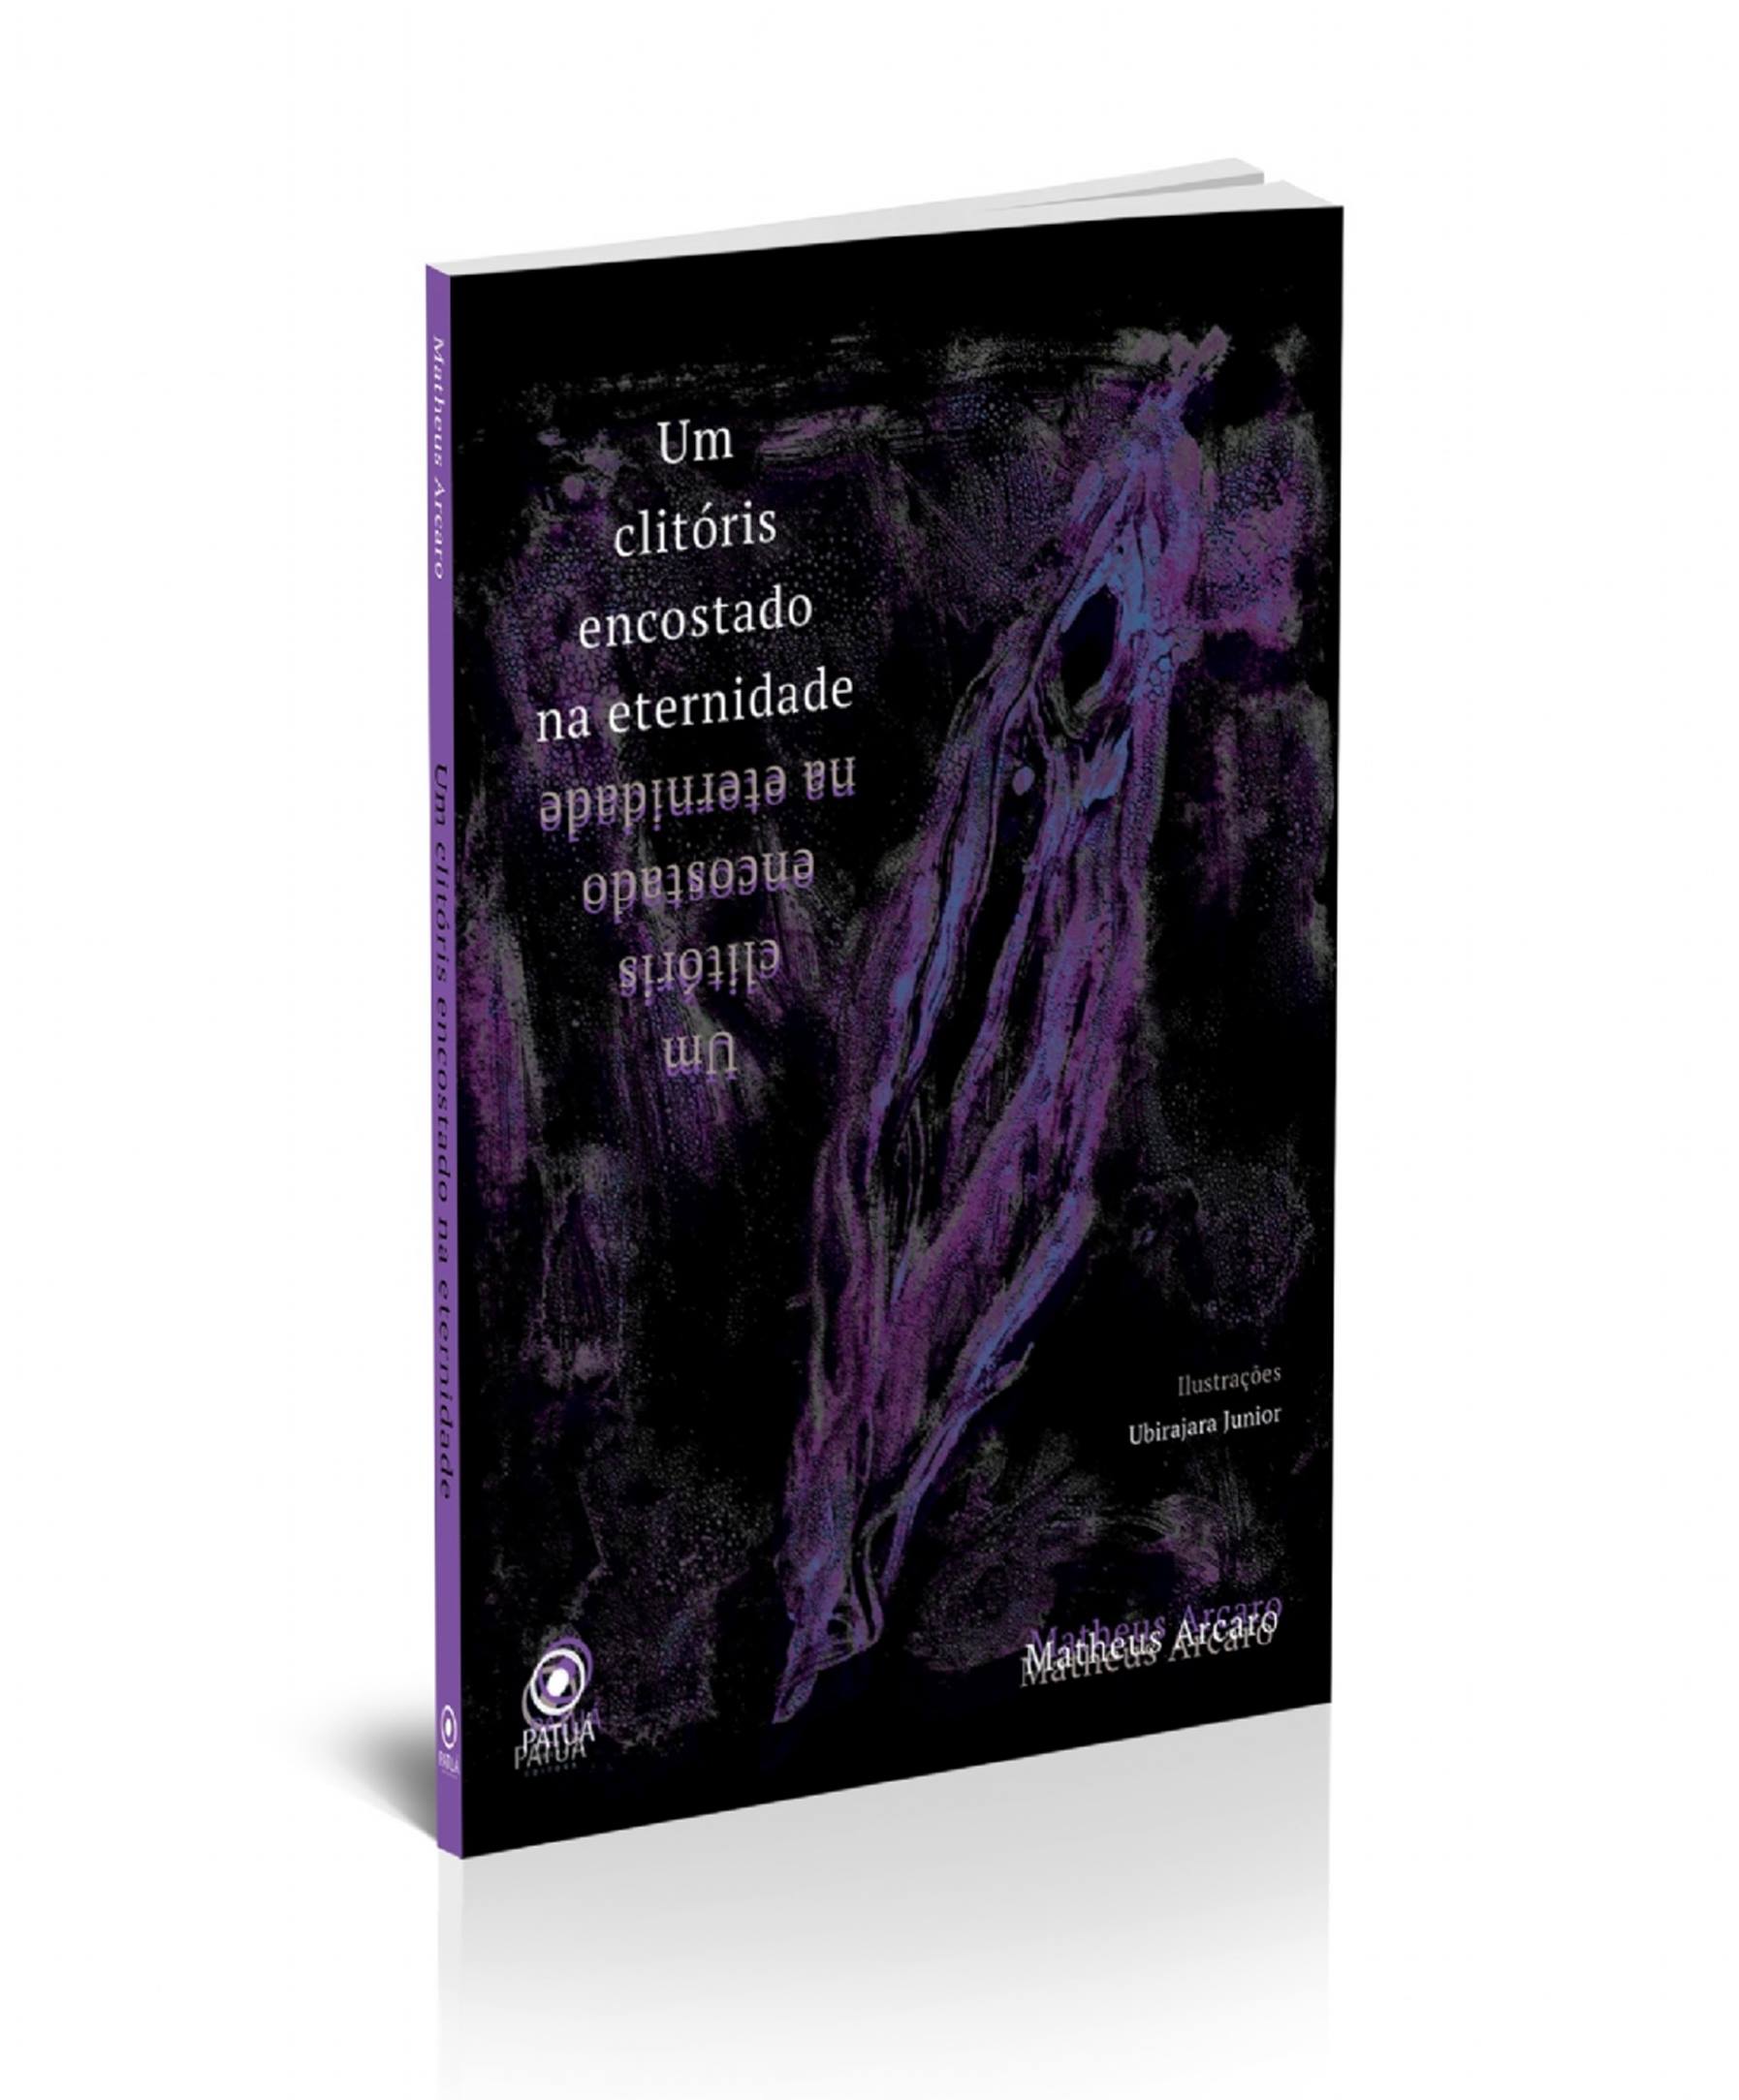 MATHEUSARCARO LIVRO - Um clitóris encostado na eternidade é o novo livro de Matheus Arcaro